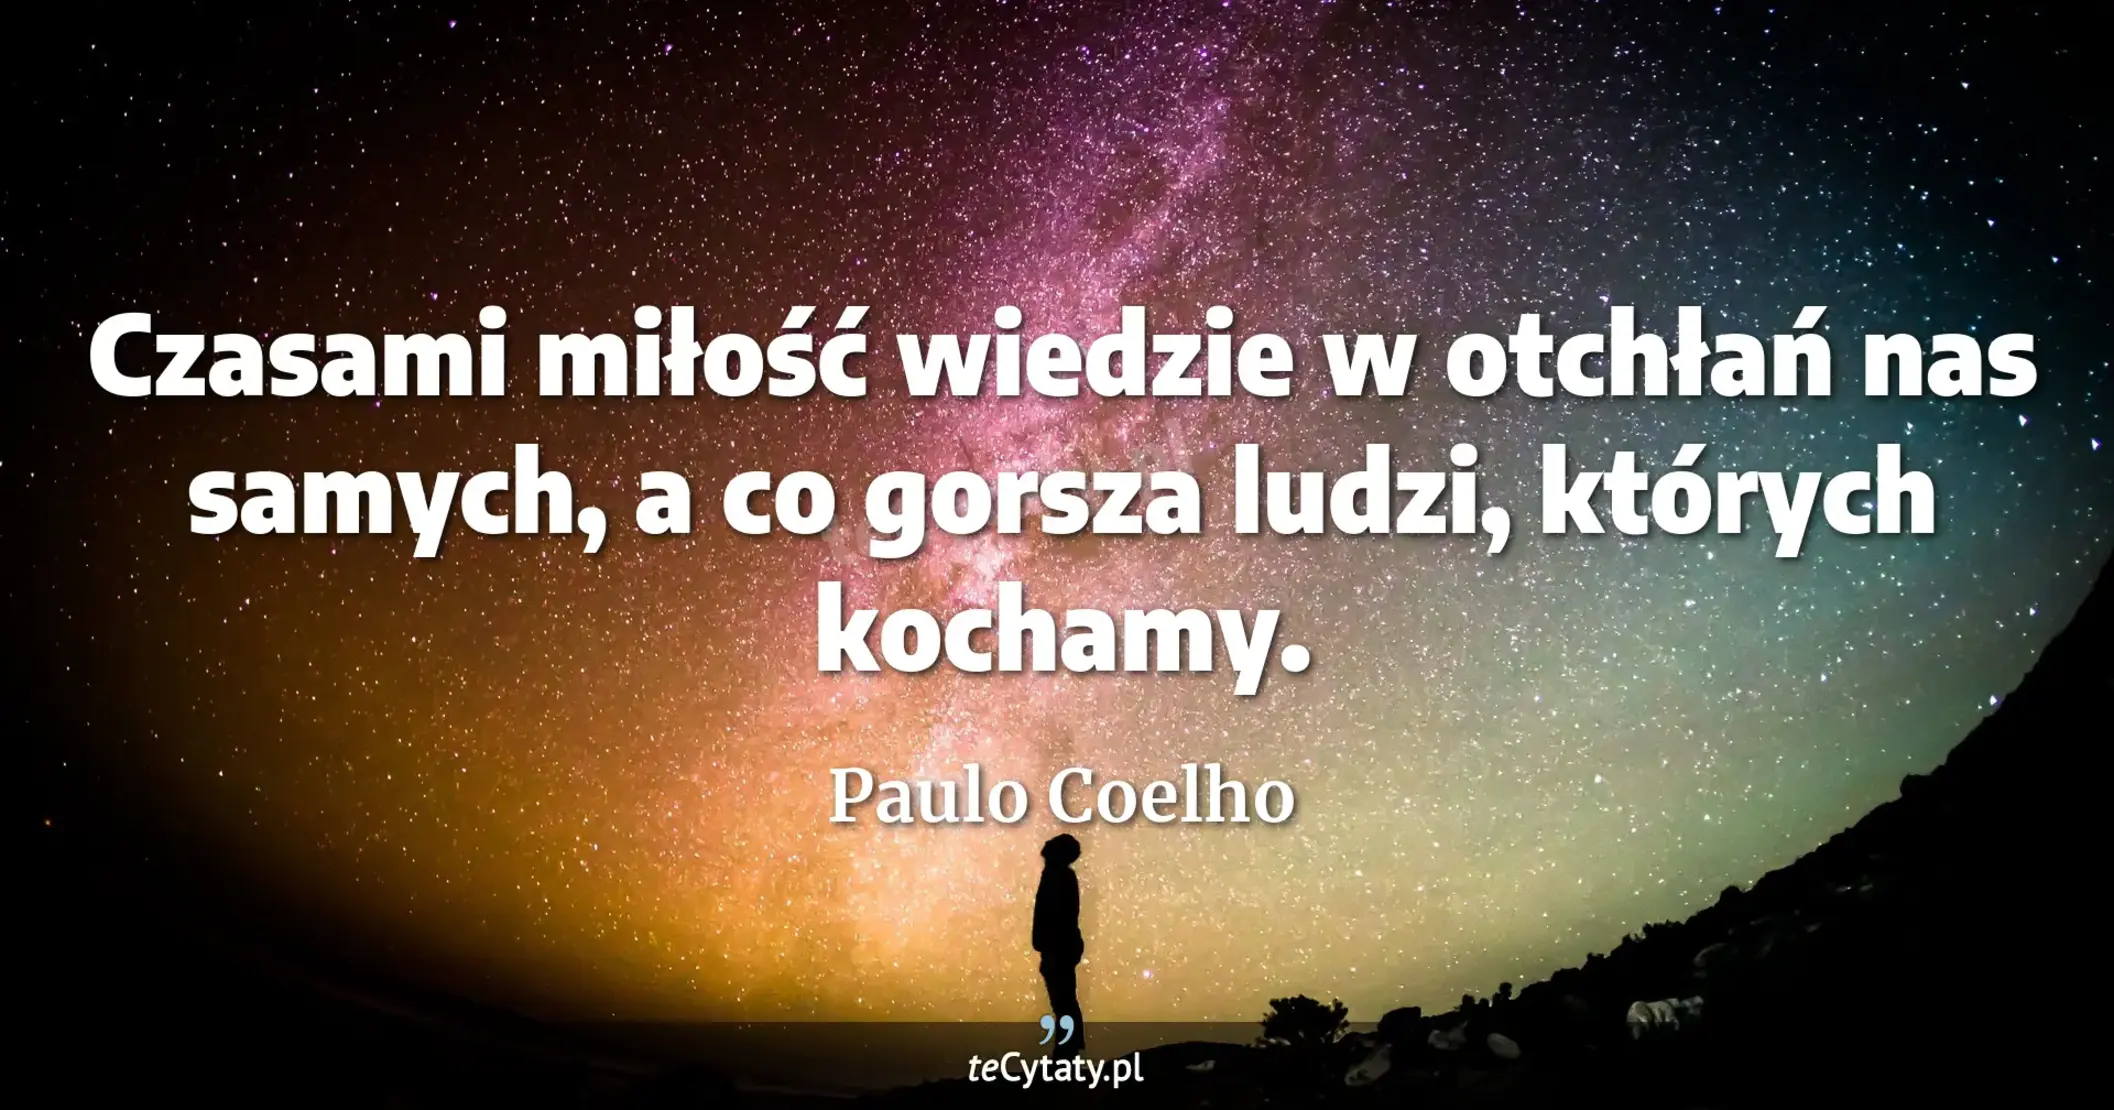 Czasami miłość wiedzie w otchłań nas samych, a co gorsza ludzi, których kochamy. - Paulo Coelho